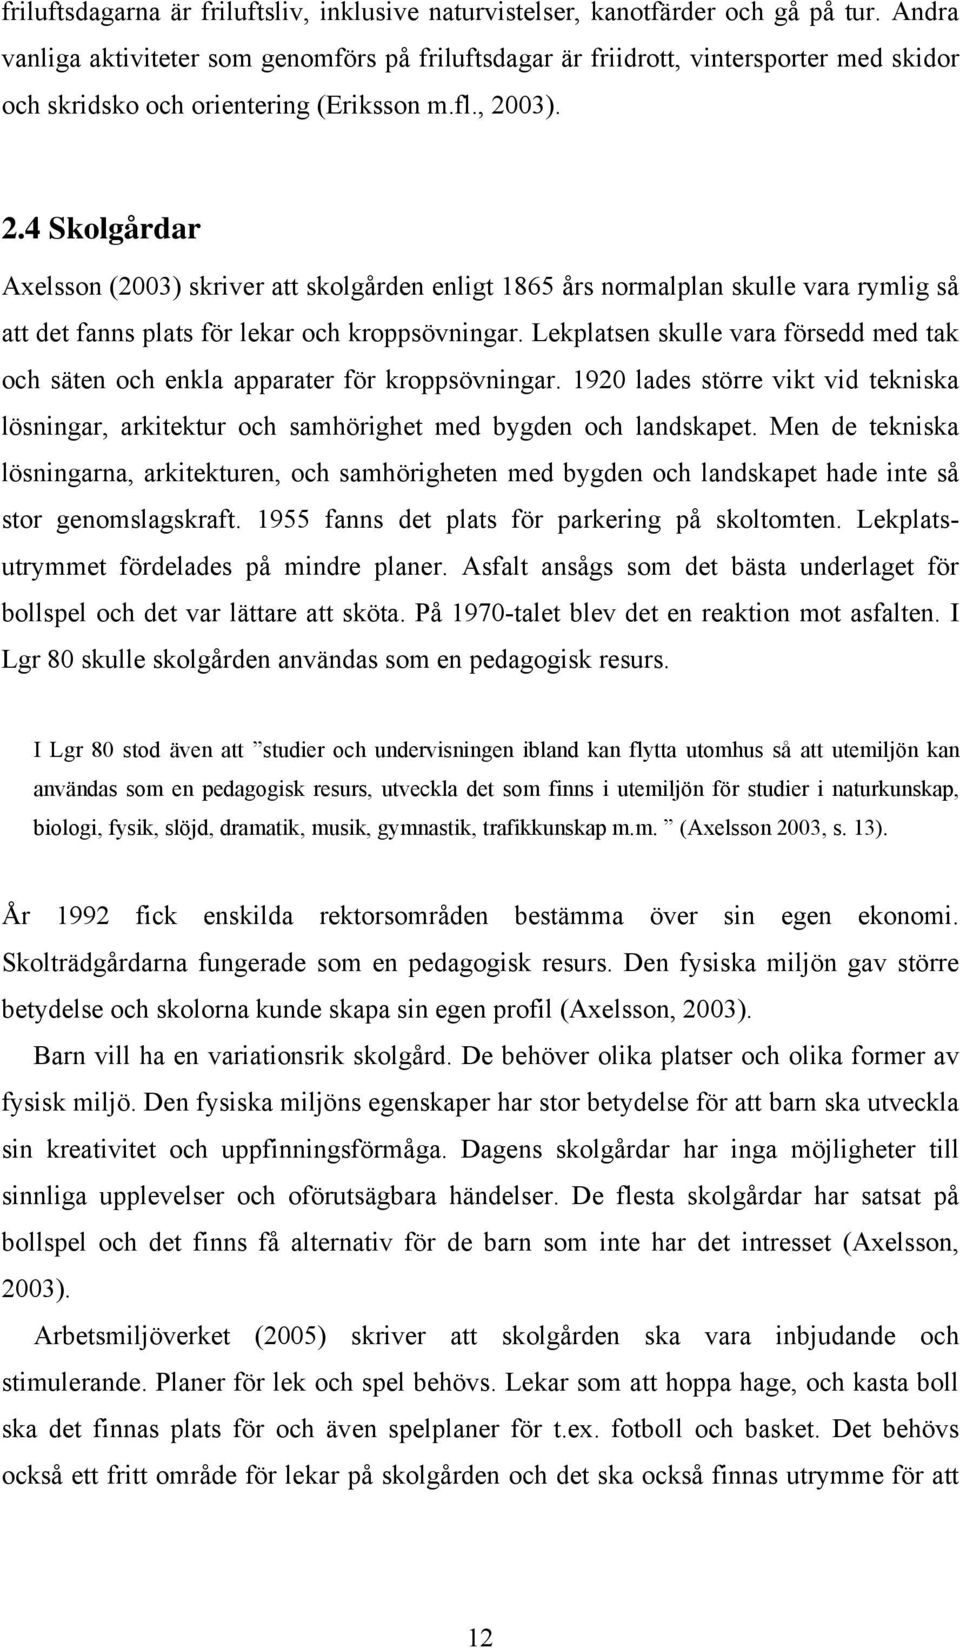 03). 2.4 Skolgårdar Axelsson (2003) skriver att skolgården enligt 1865 års normalplan skulle vara rymlig så att det fanns plats för lekar och kroppsövningar.